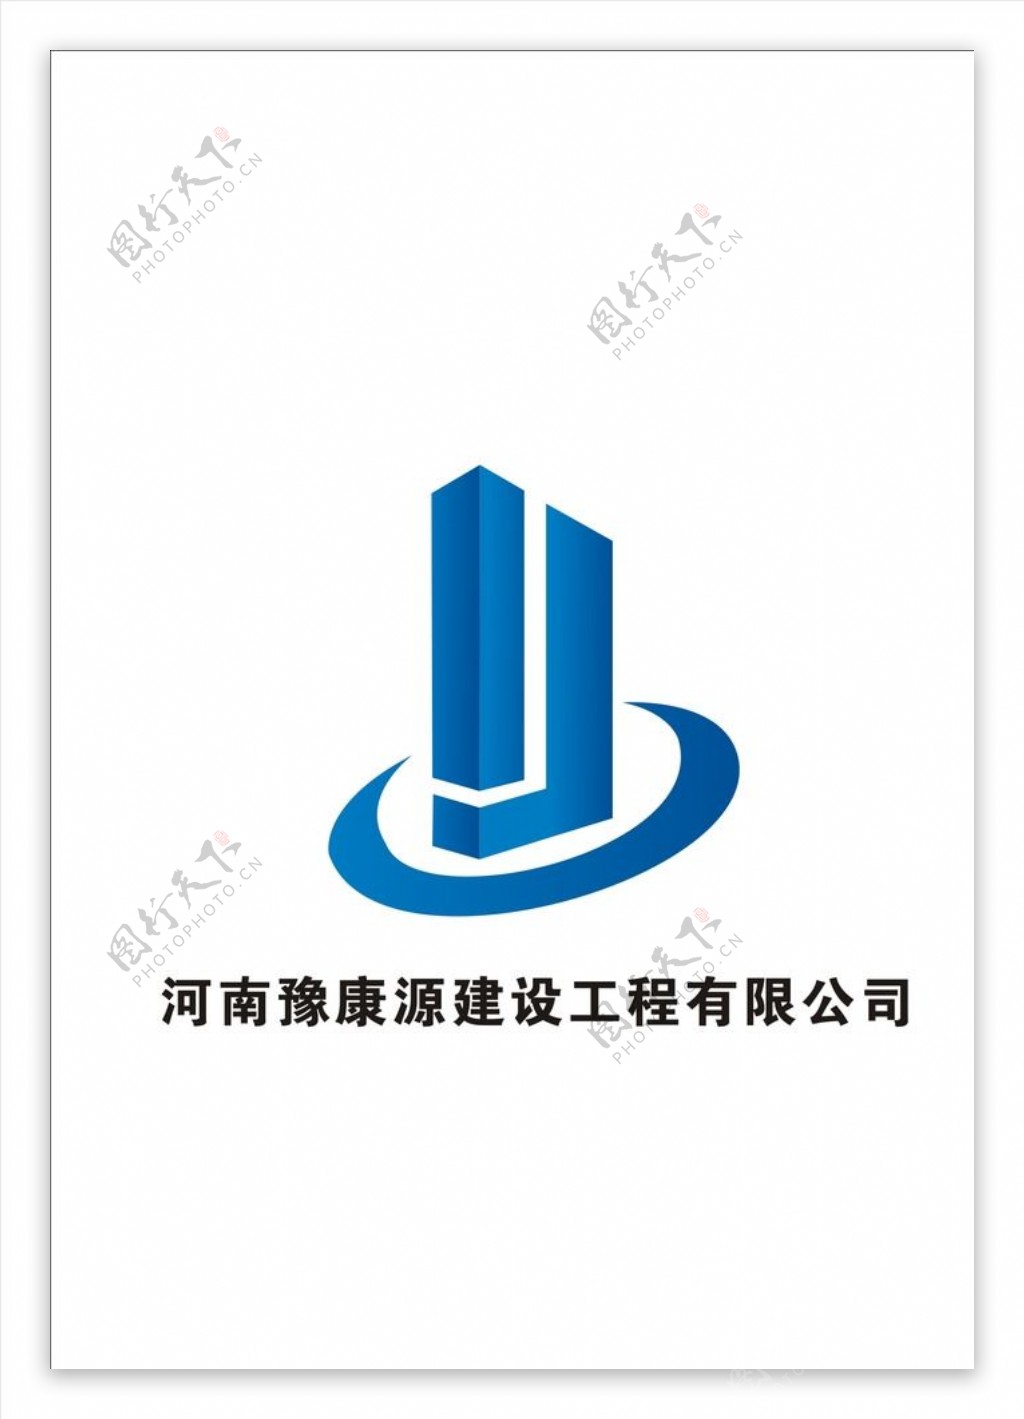 河南豫康源建设工程有限公司标志